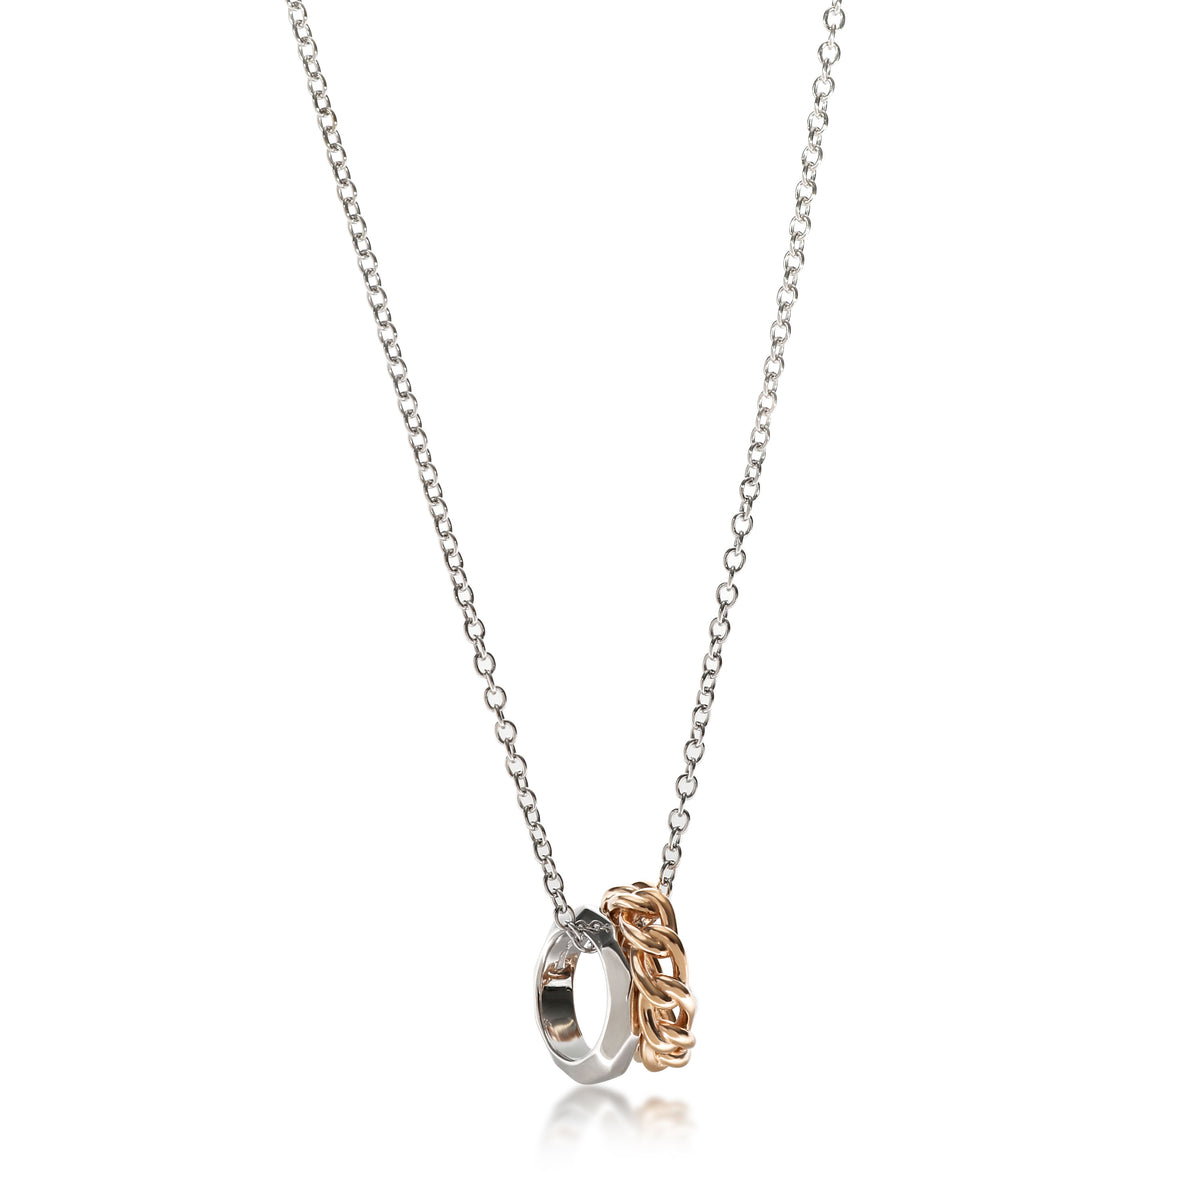 Pomellato Milano Necklace in 18K White & Rose Gold